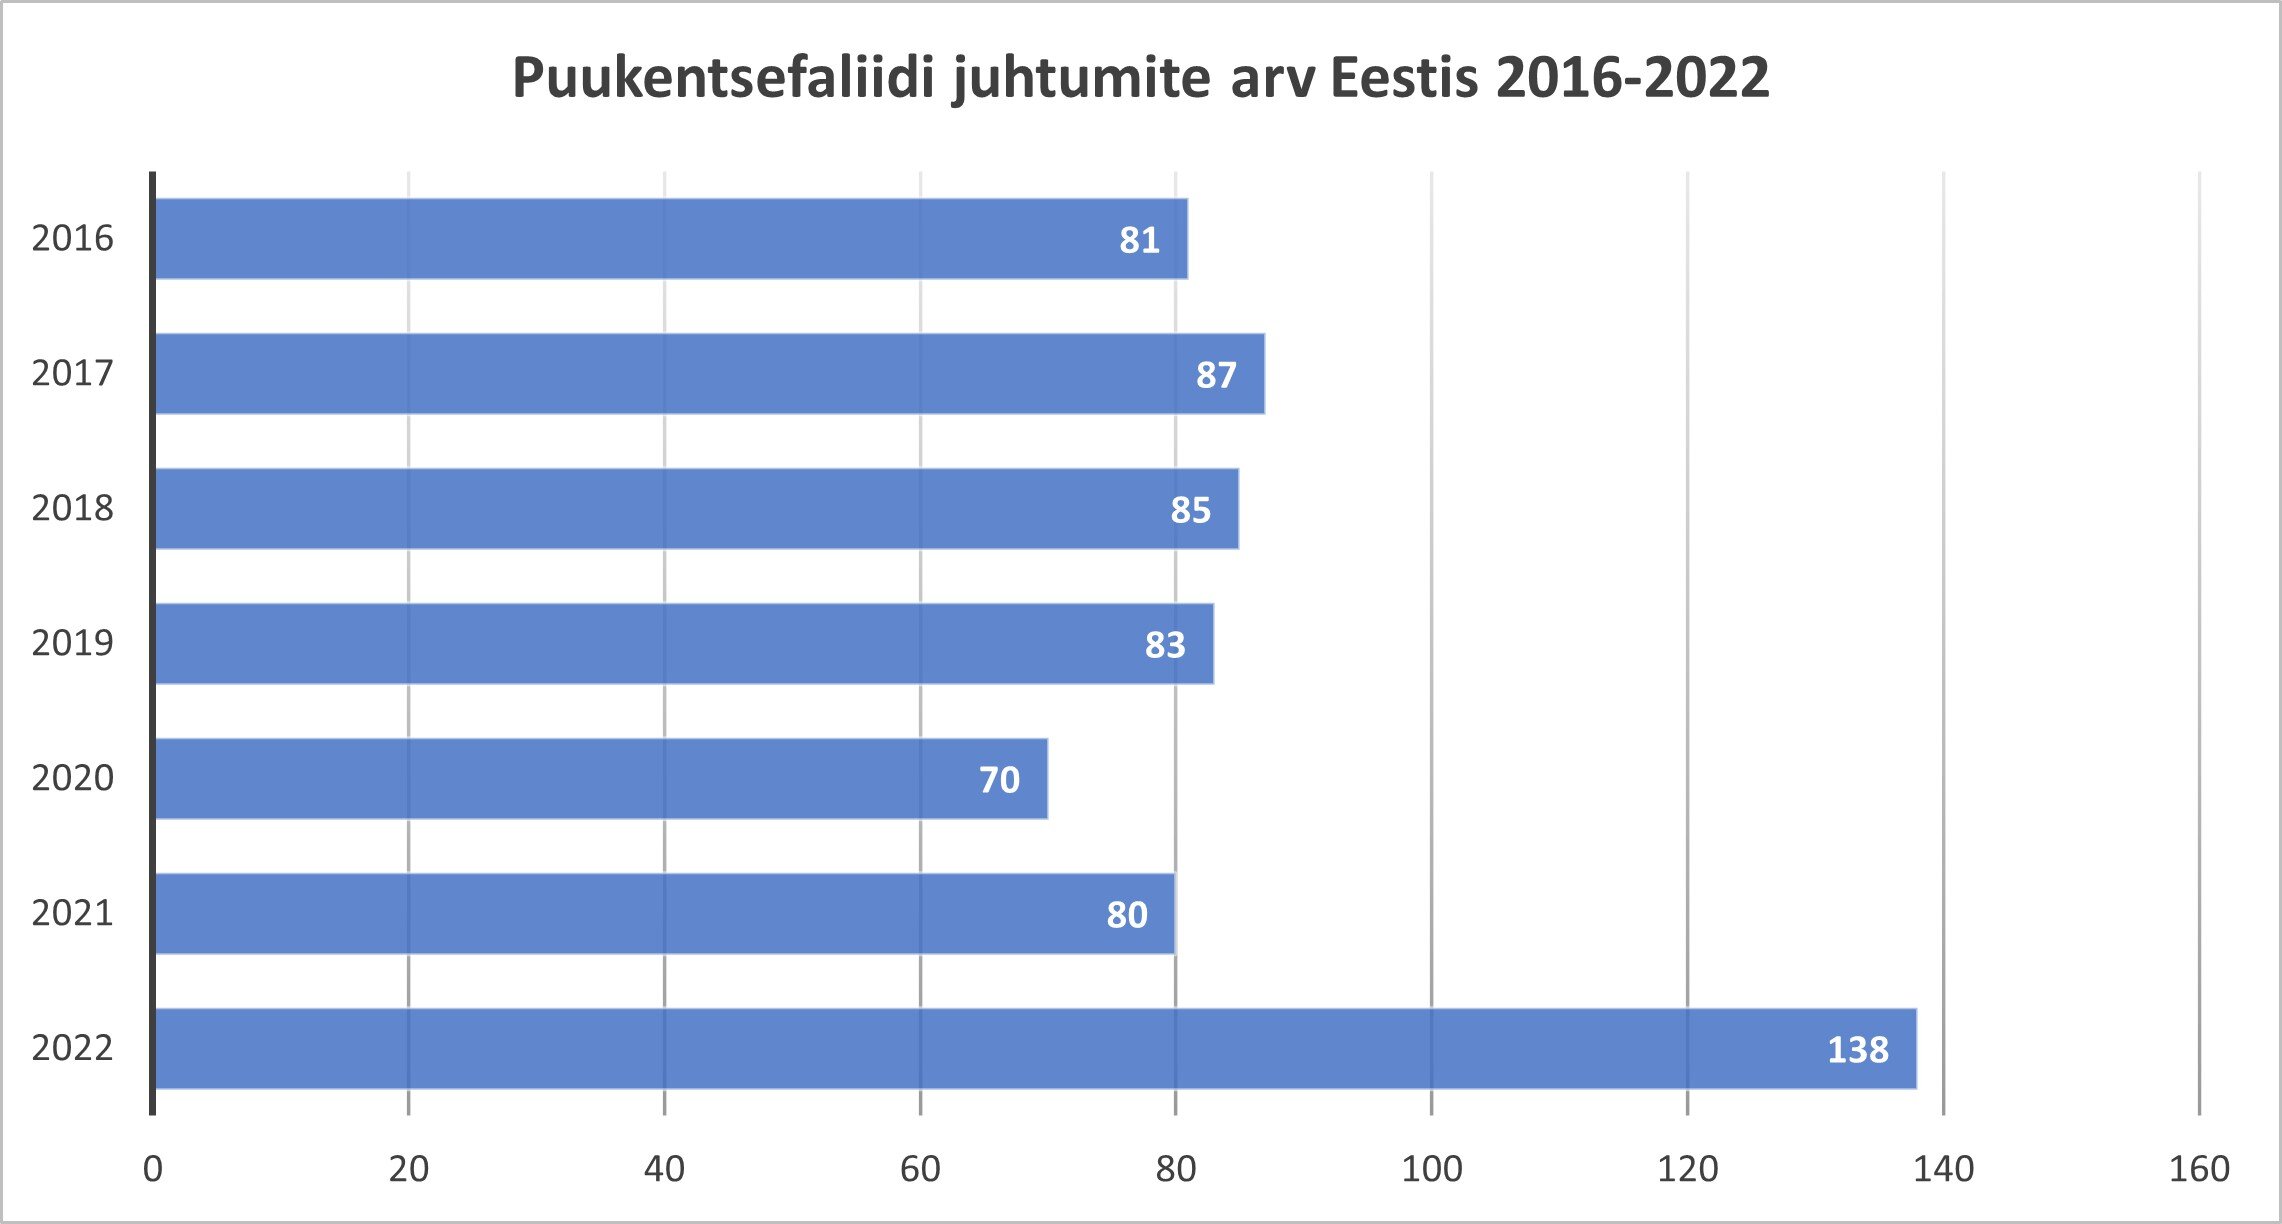 Puukentsefaliidi juhtude arv Eestis 2016-2022